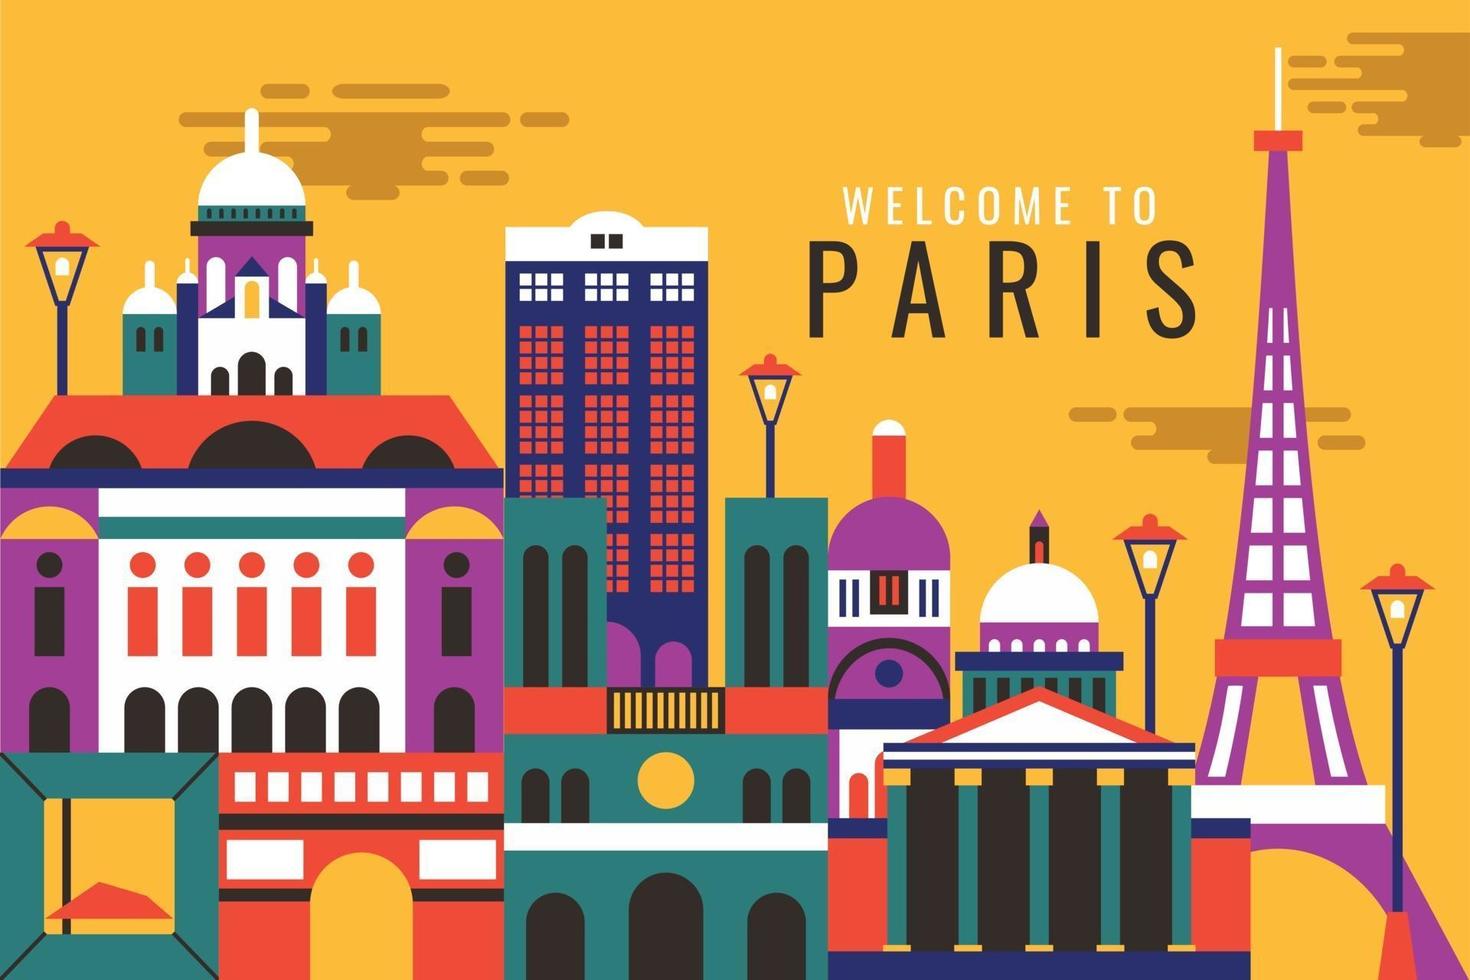 illustrazione vettoriale della città di parigi, concetto di design piatto